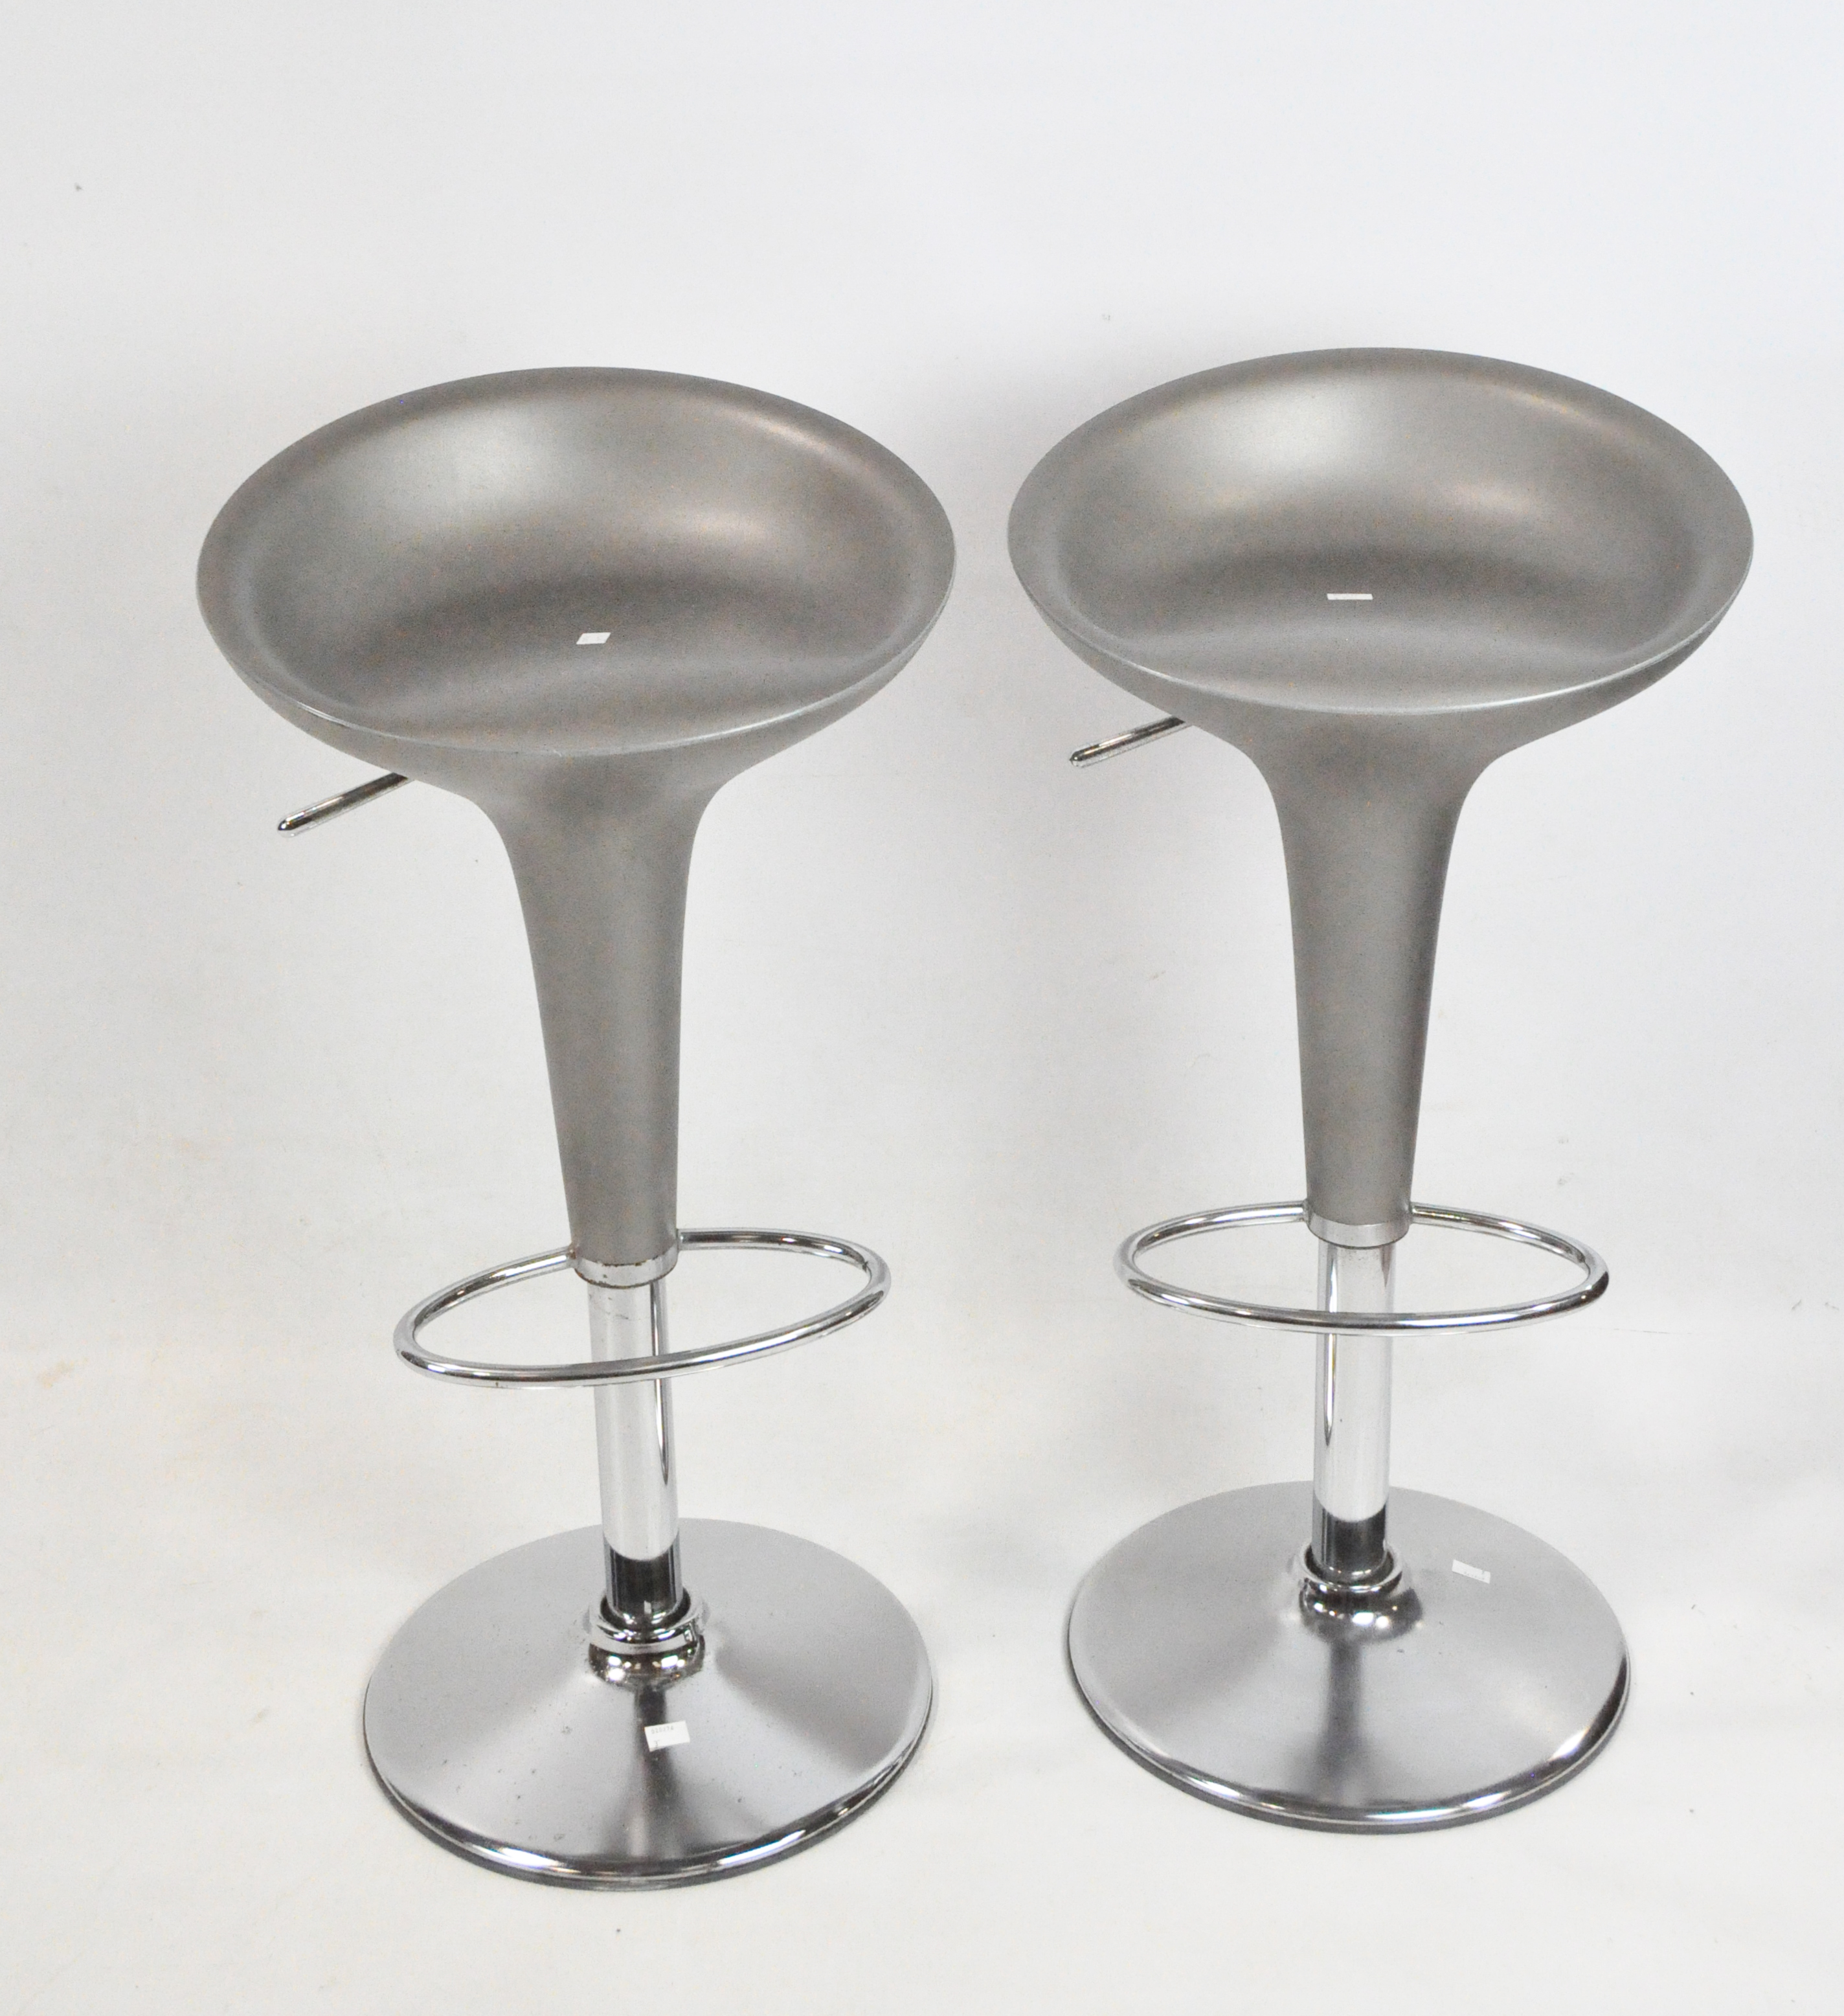 Two Italian Magis Bombo bar stools by Stefano Giovannoni, made in Italy,